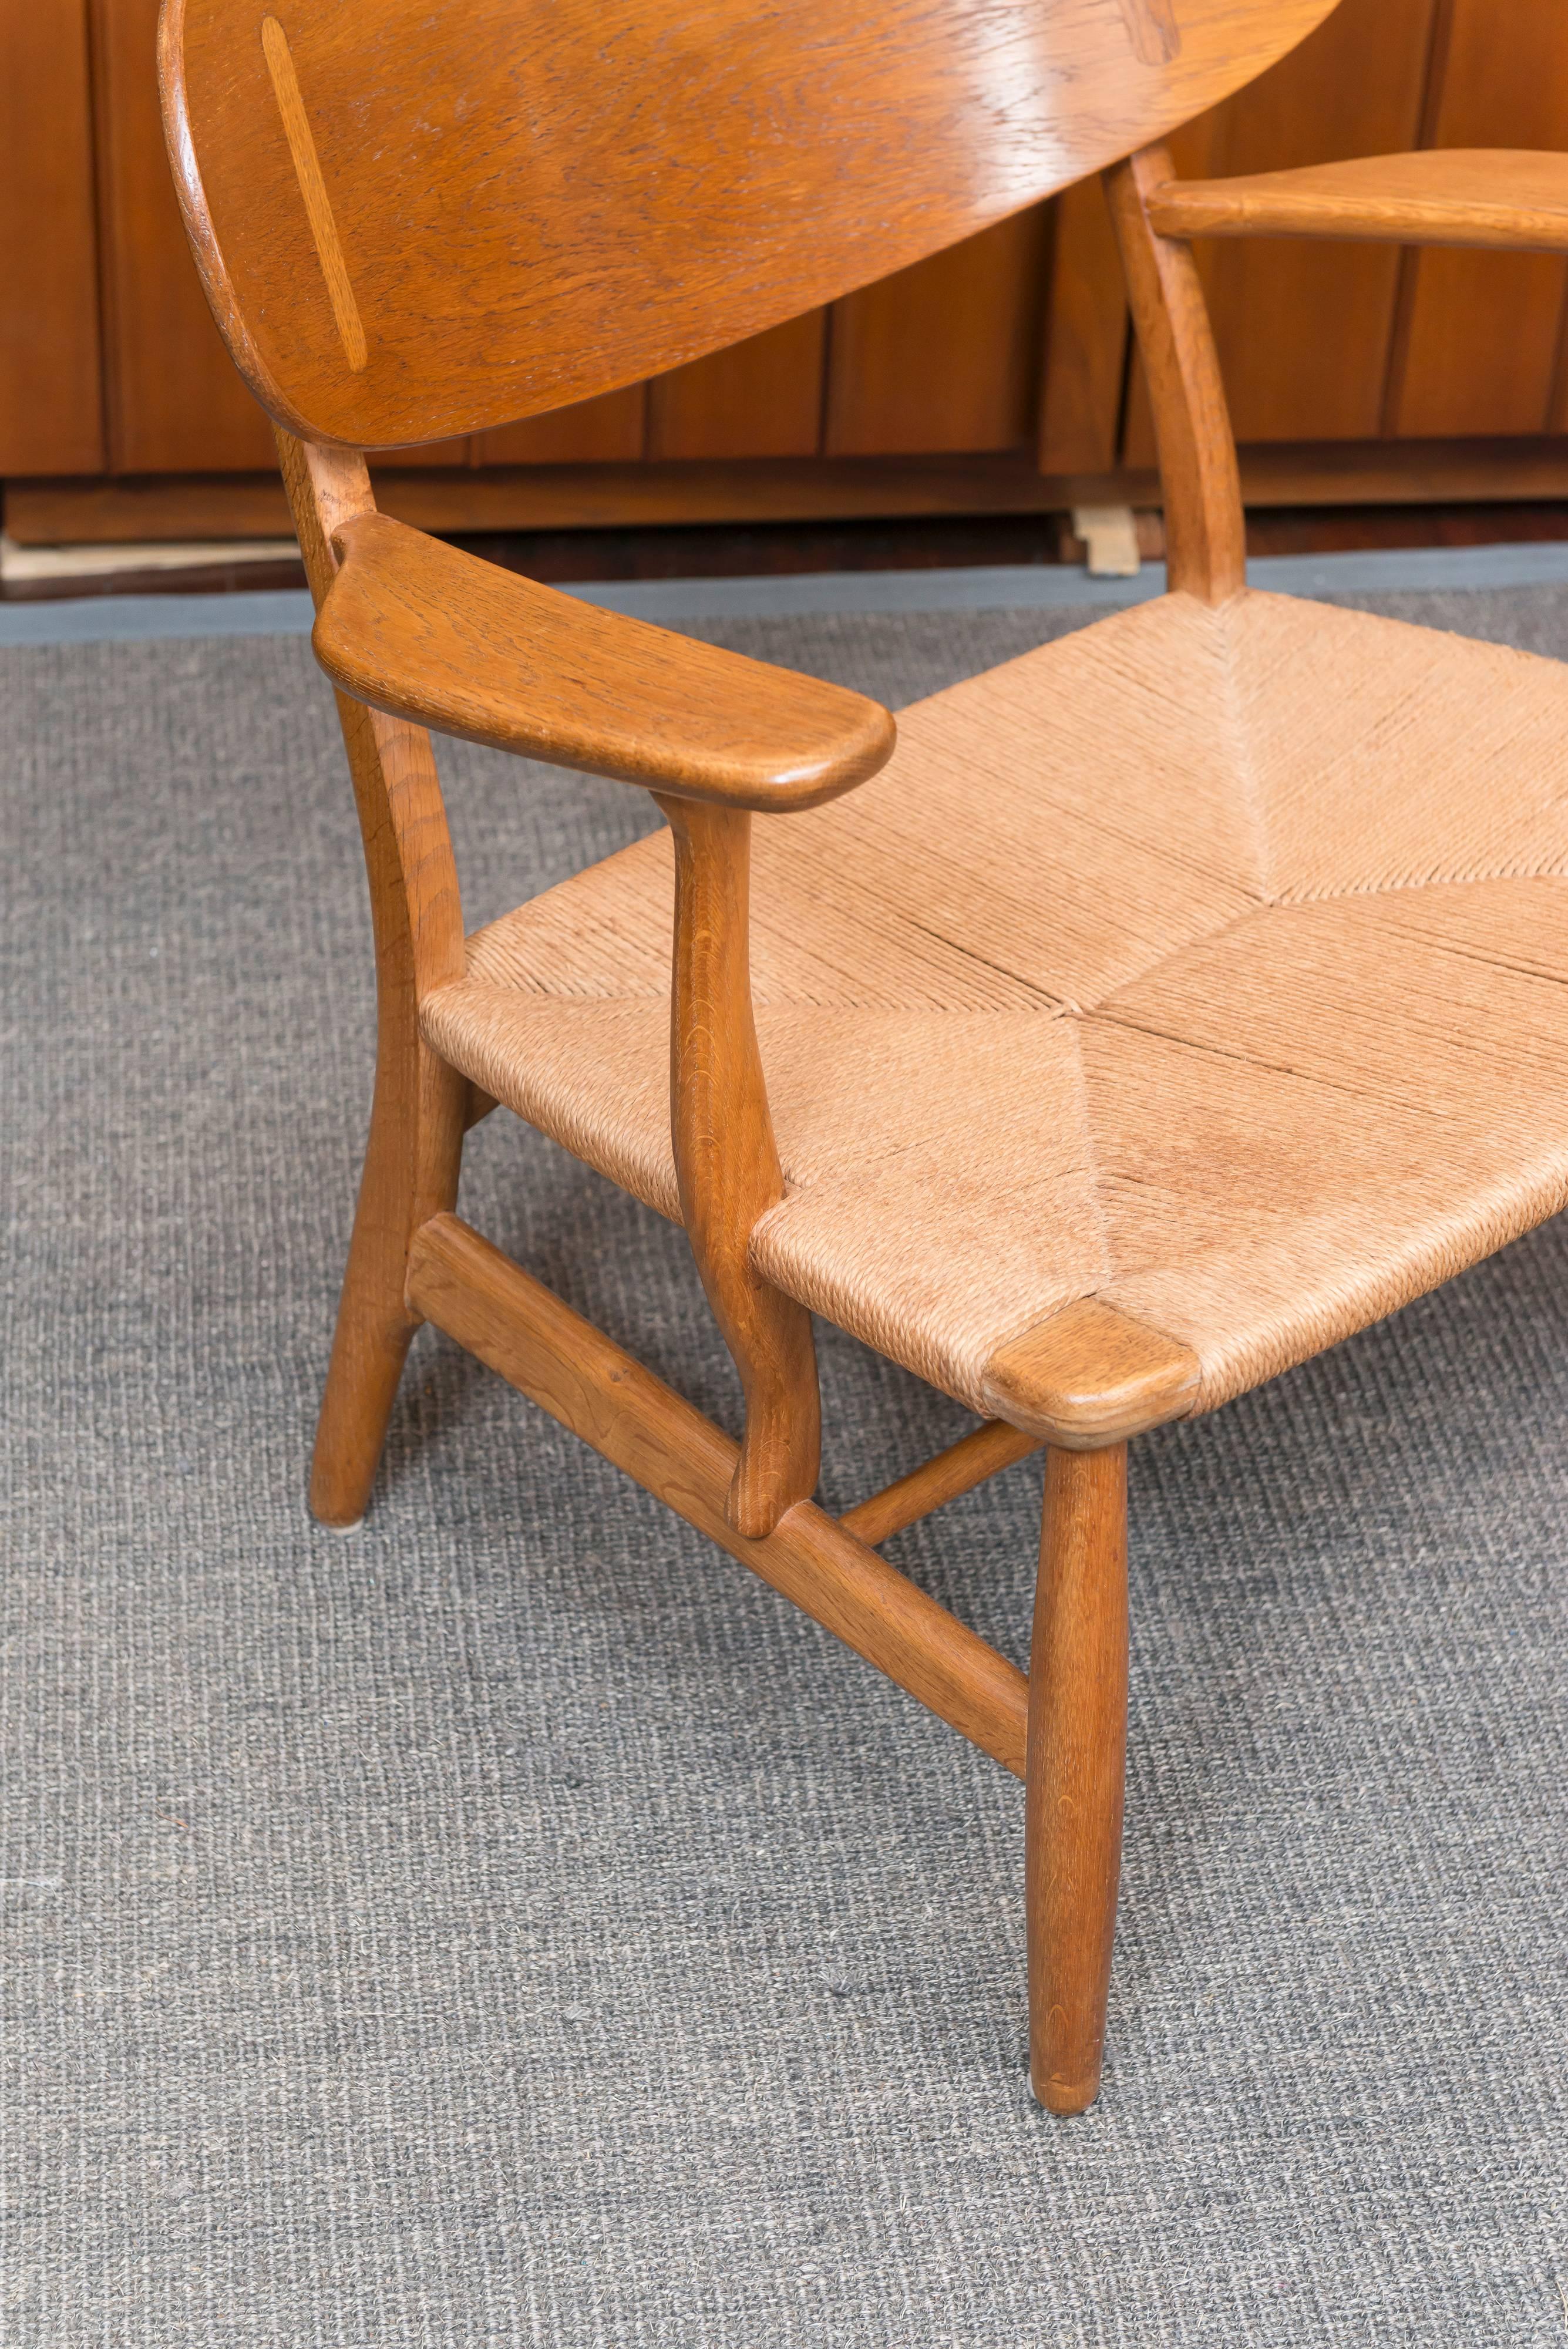 Original matched pair of oak Hans Wegner design easy chairs model 22 for Carl Hansen & Son, Denmark.